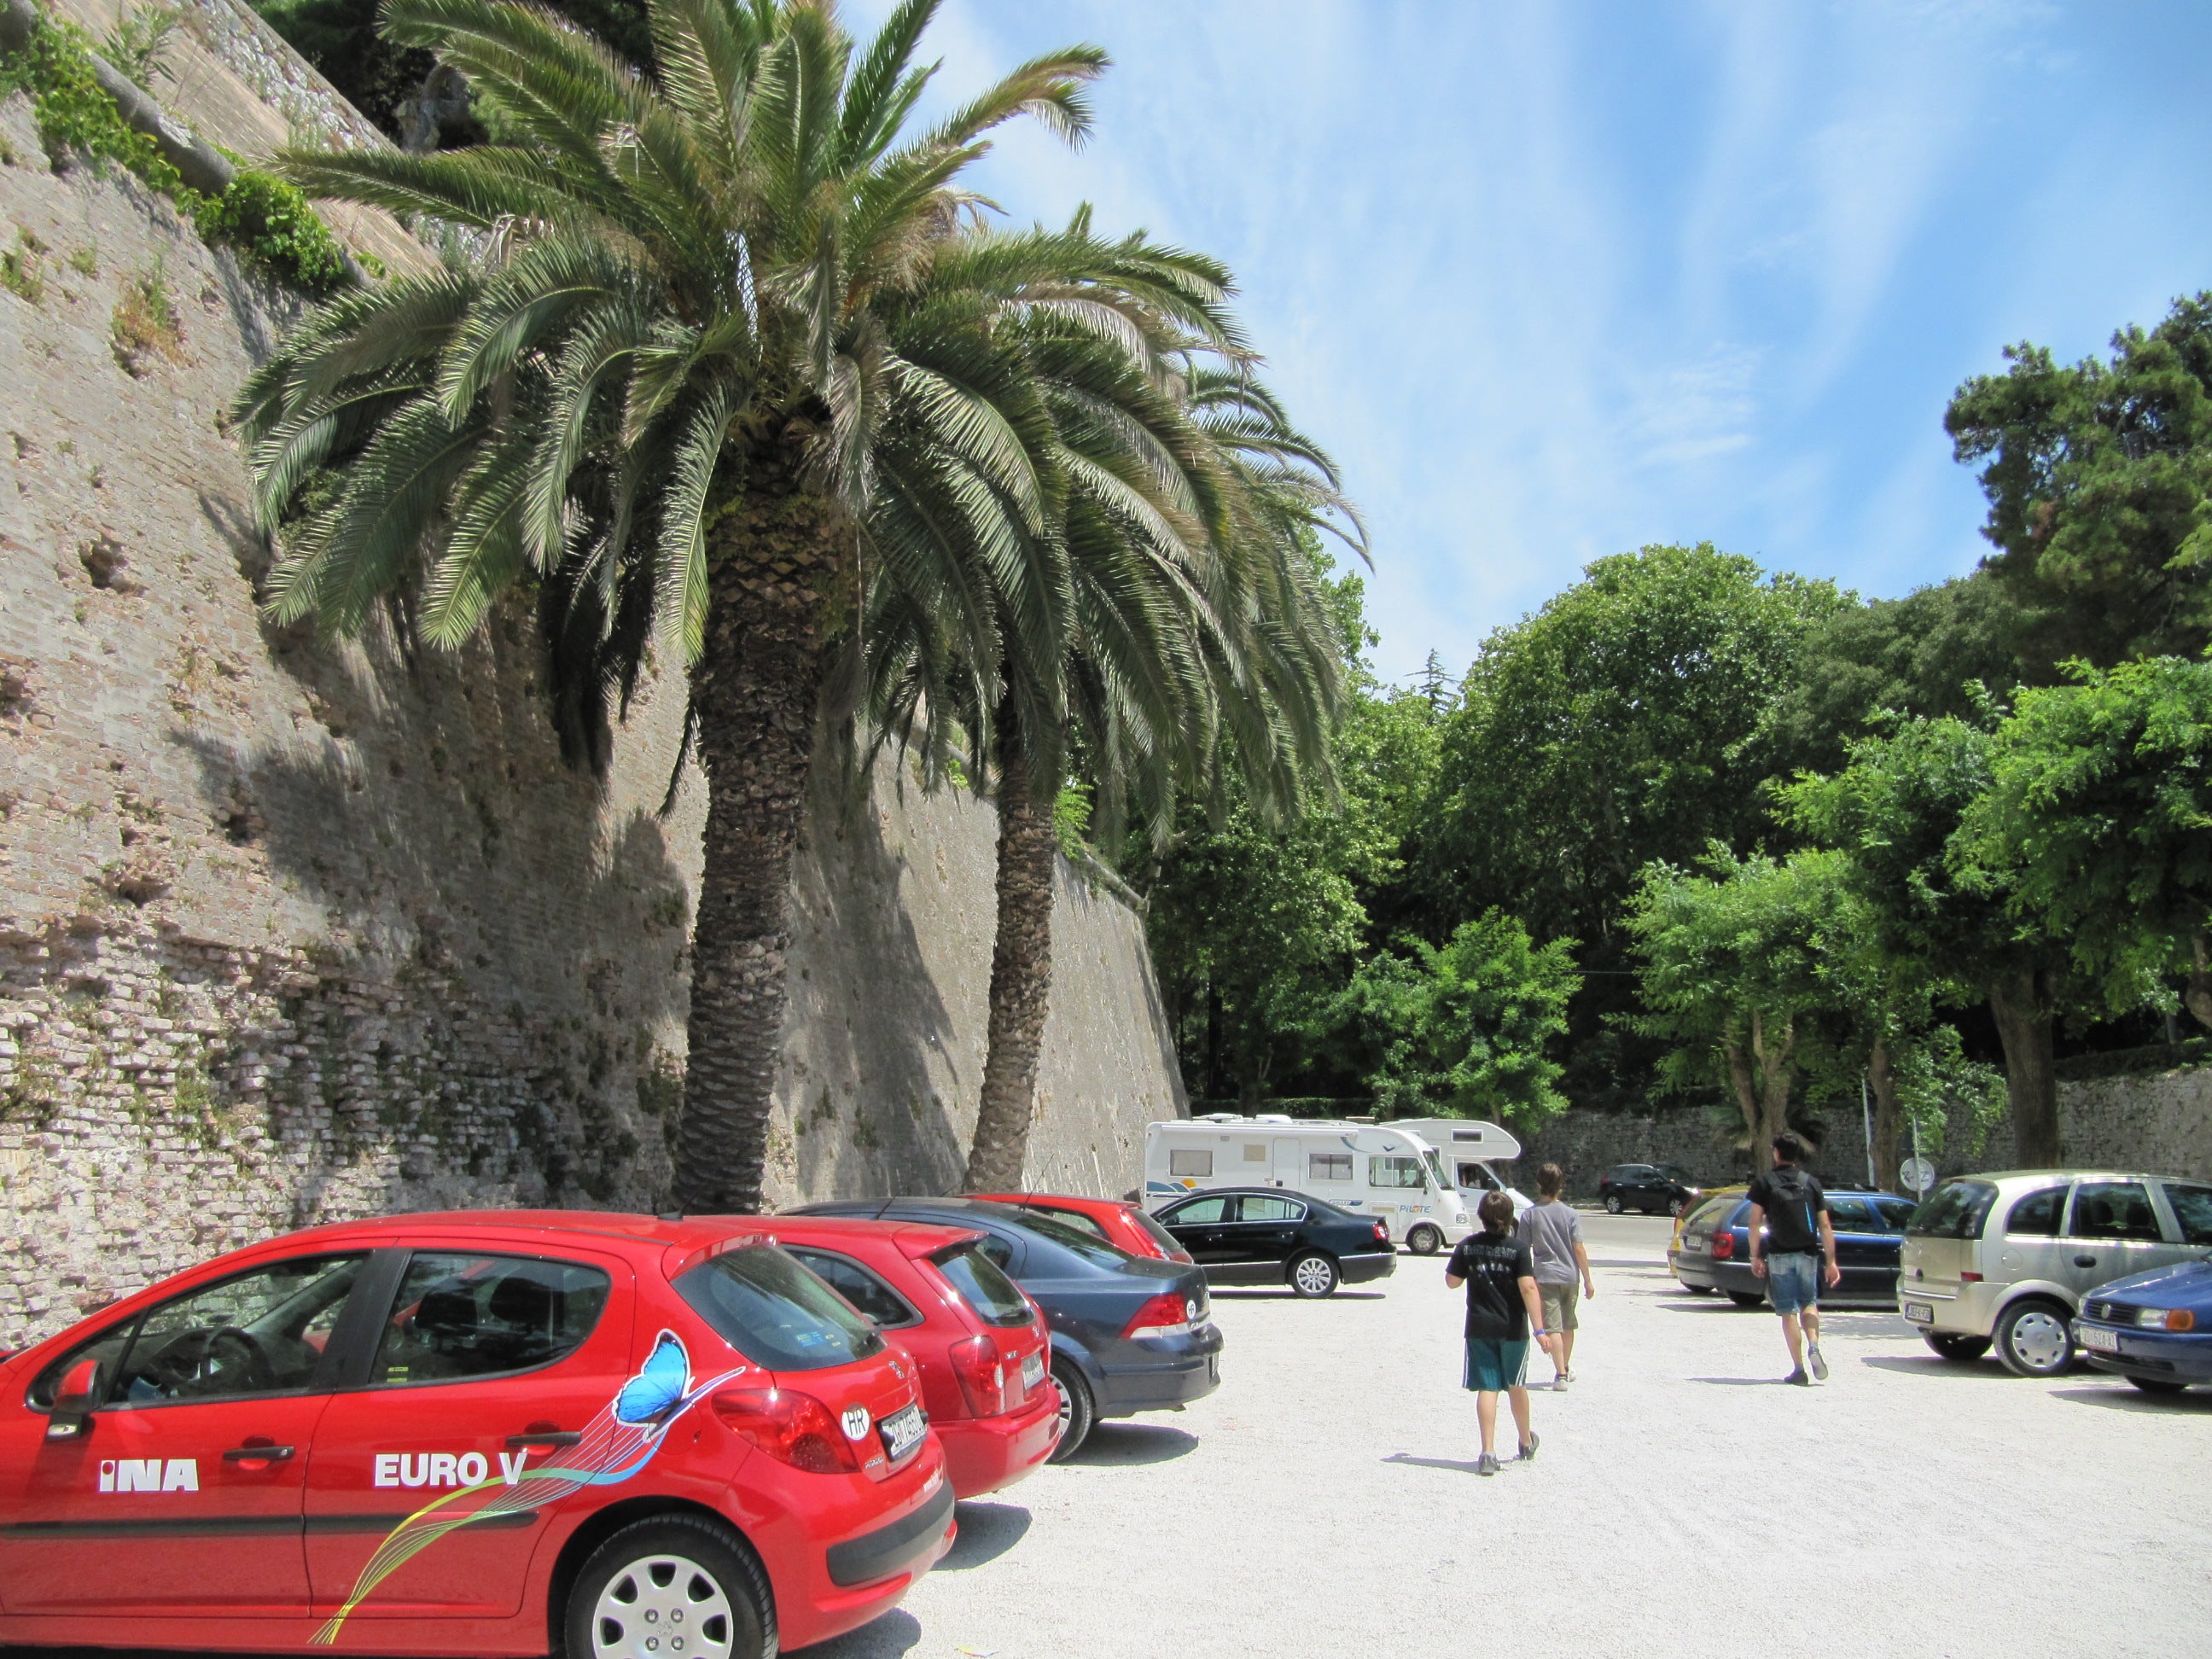 Parking in Zadar